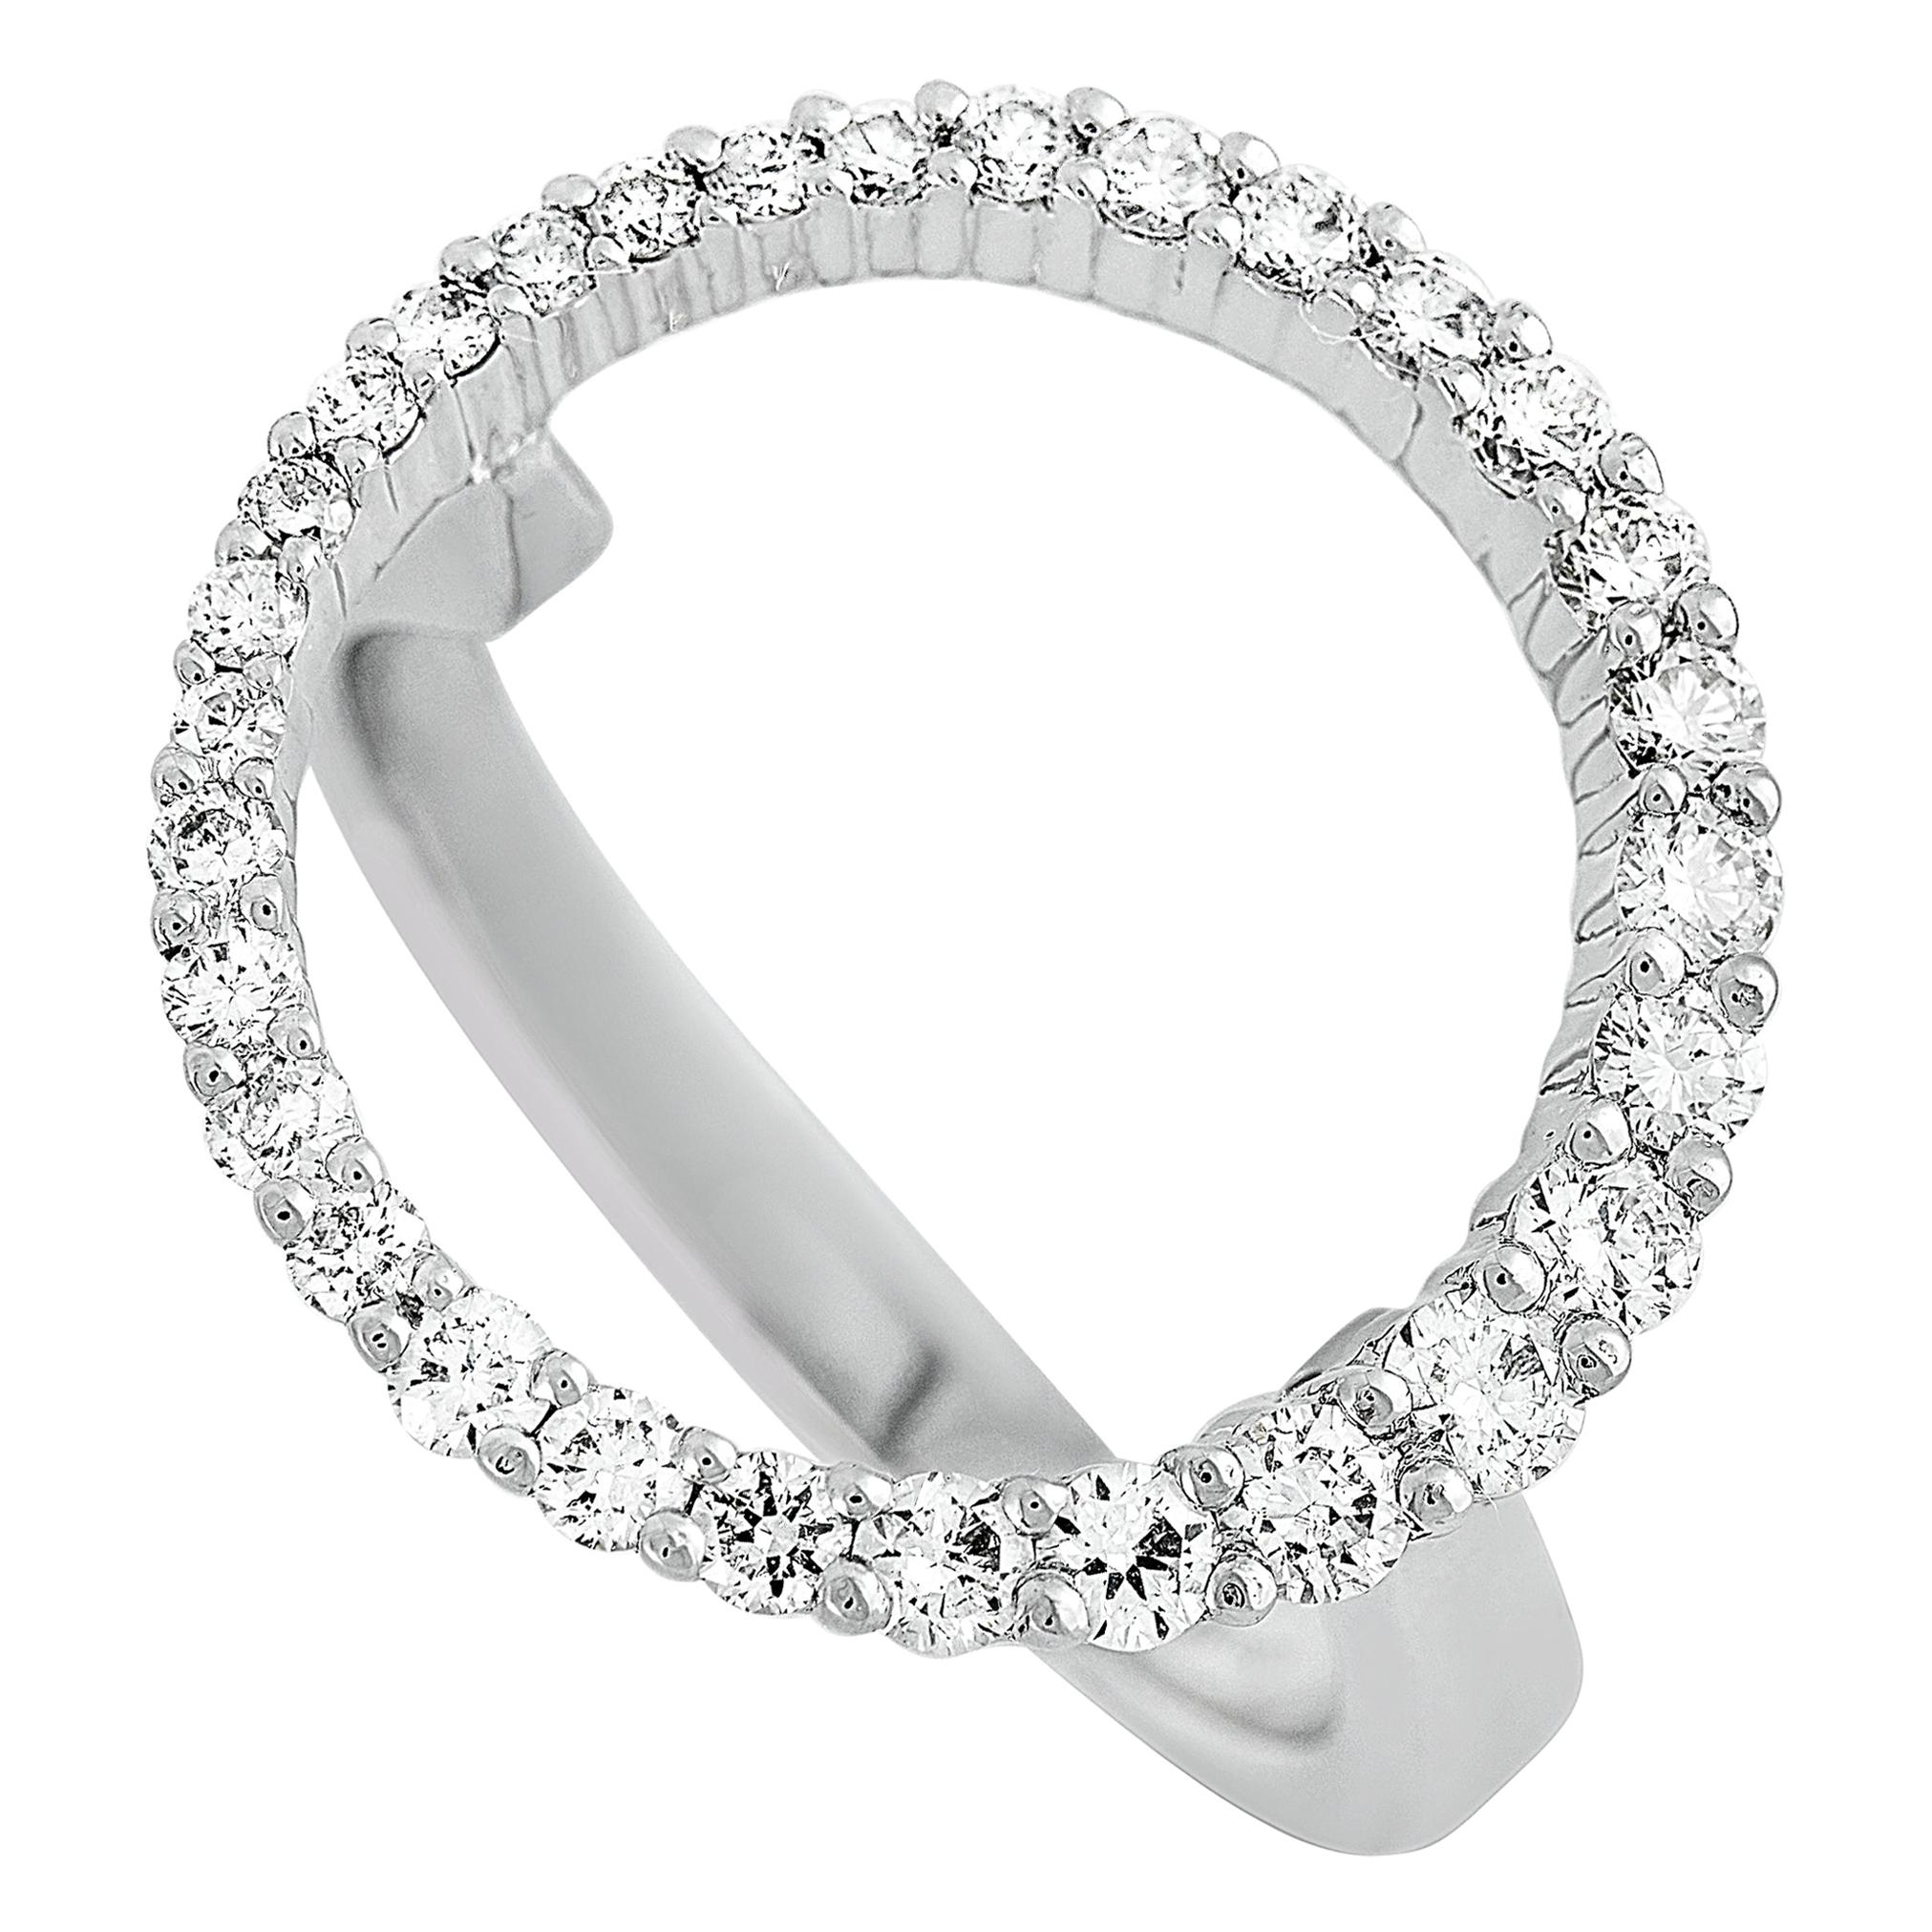 LB Exclusive 18 Karat White Gold 0.65 Carat Diamond Ring